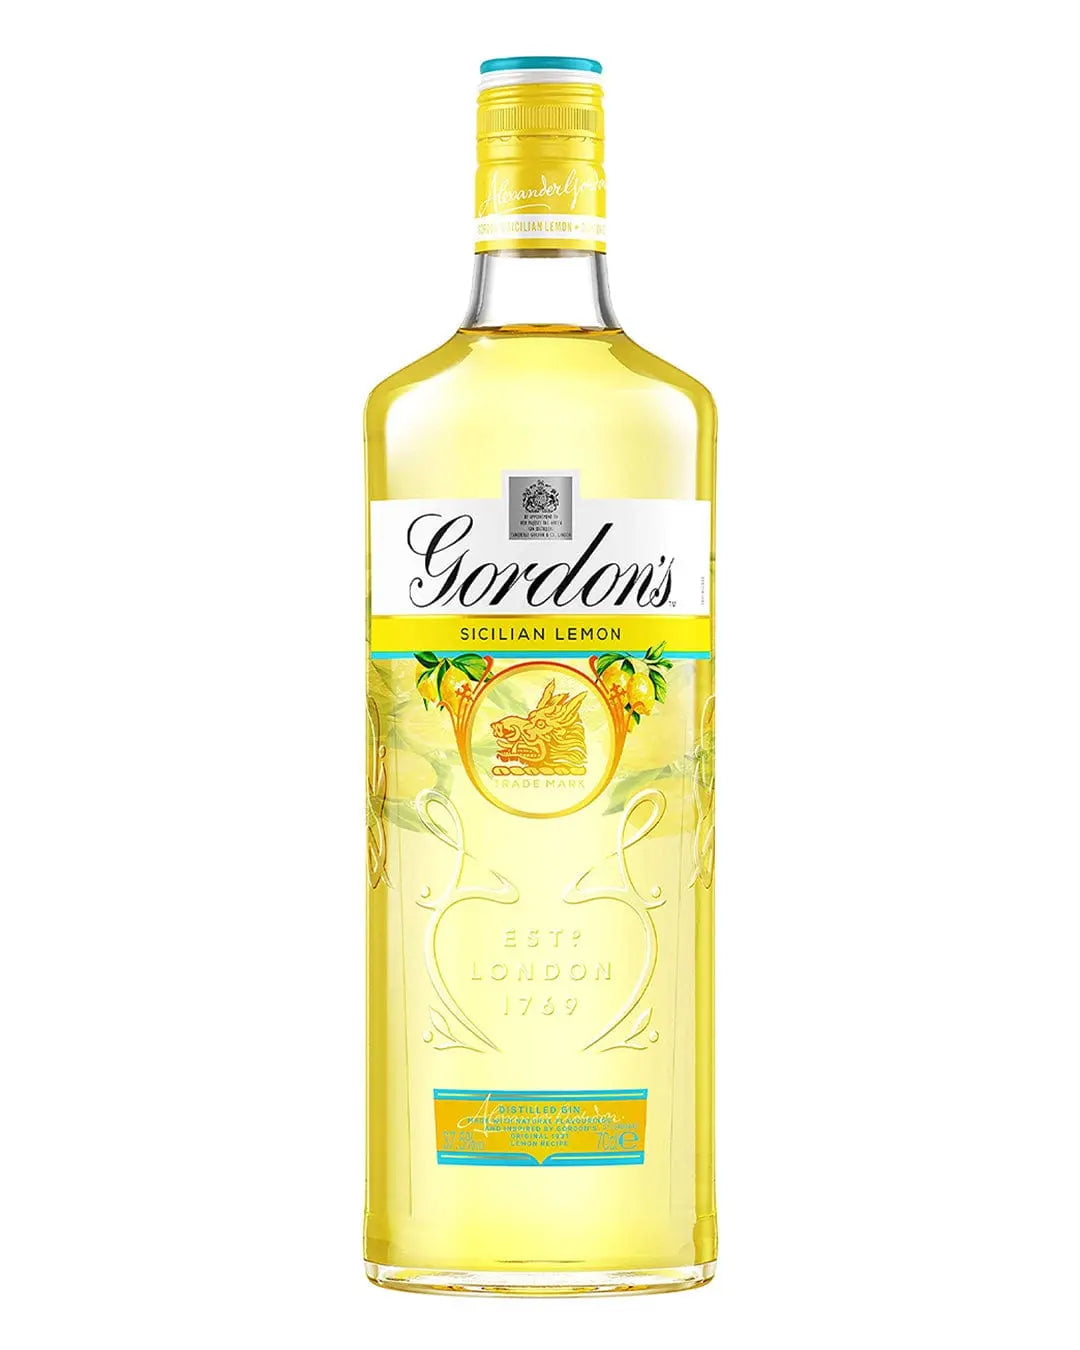 Gordon's Sicilian Lemon Gin, 70 cl Gin 5000289932240